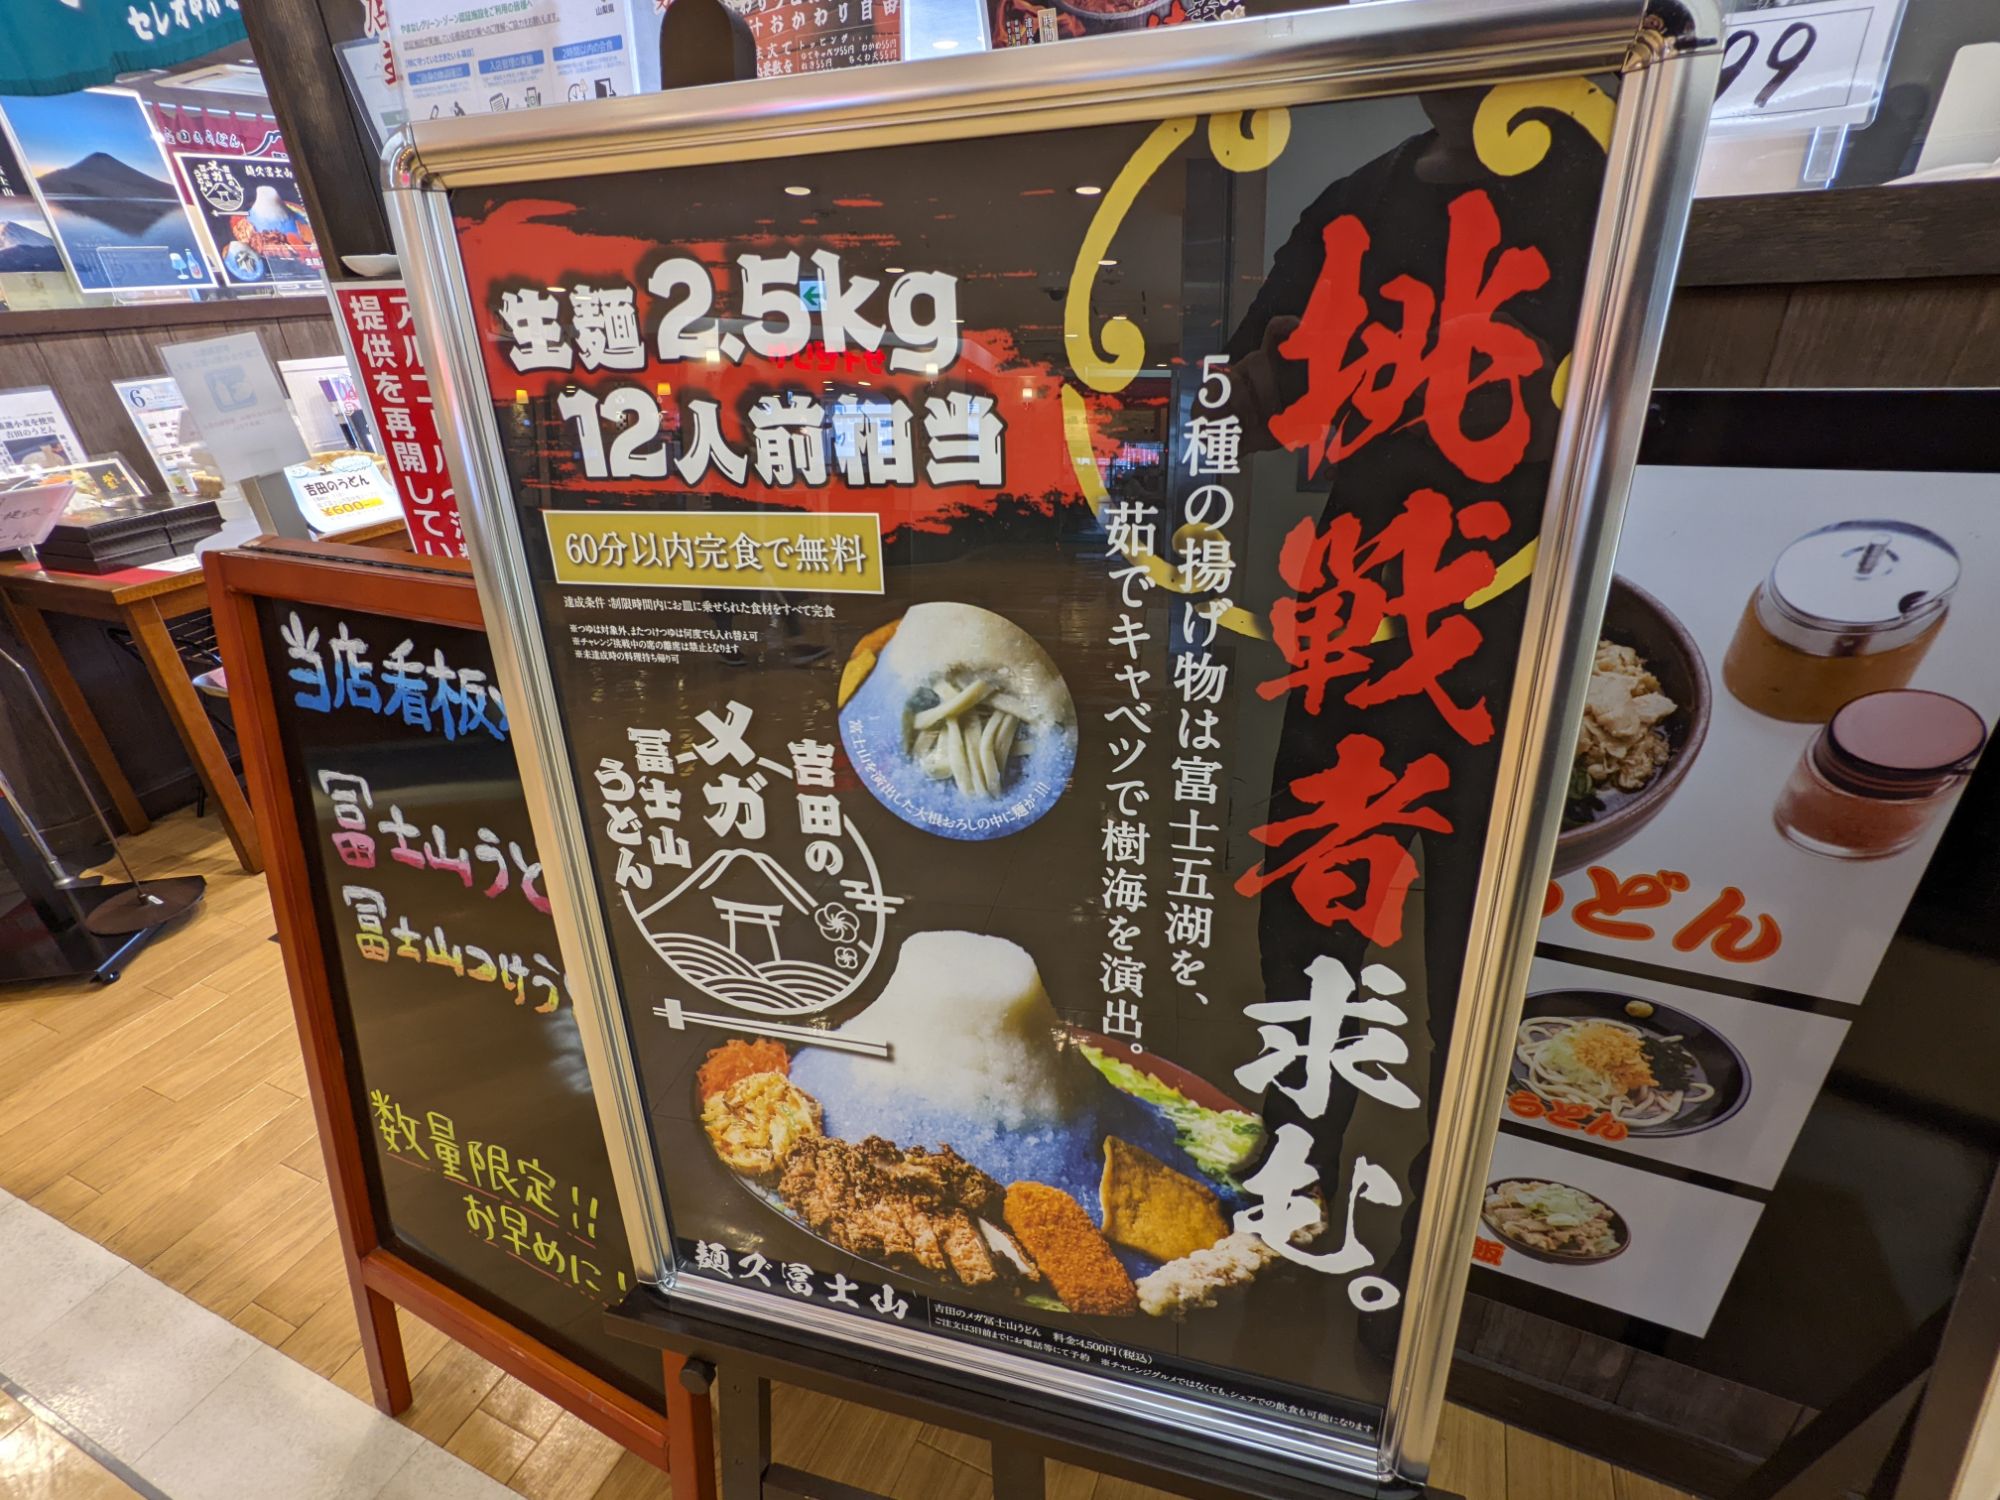 「麺’ズ冨士山 セレオ甲府店」の看板